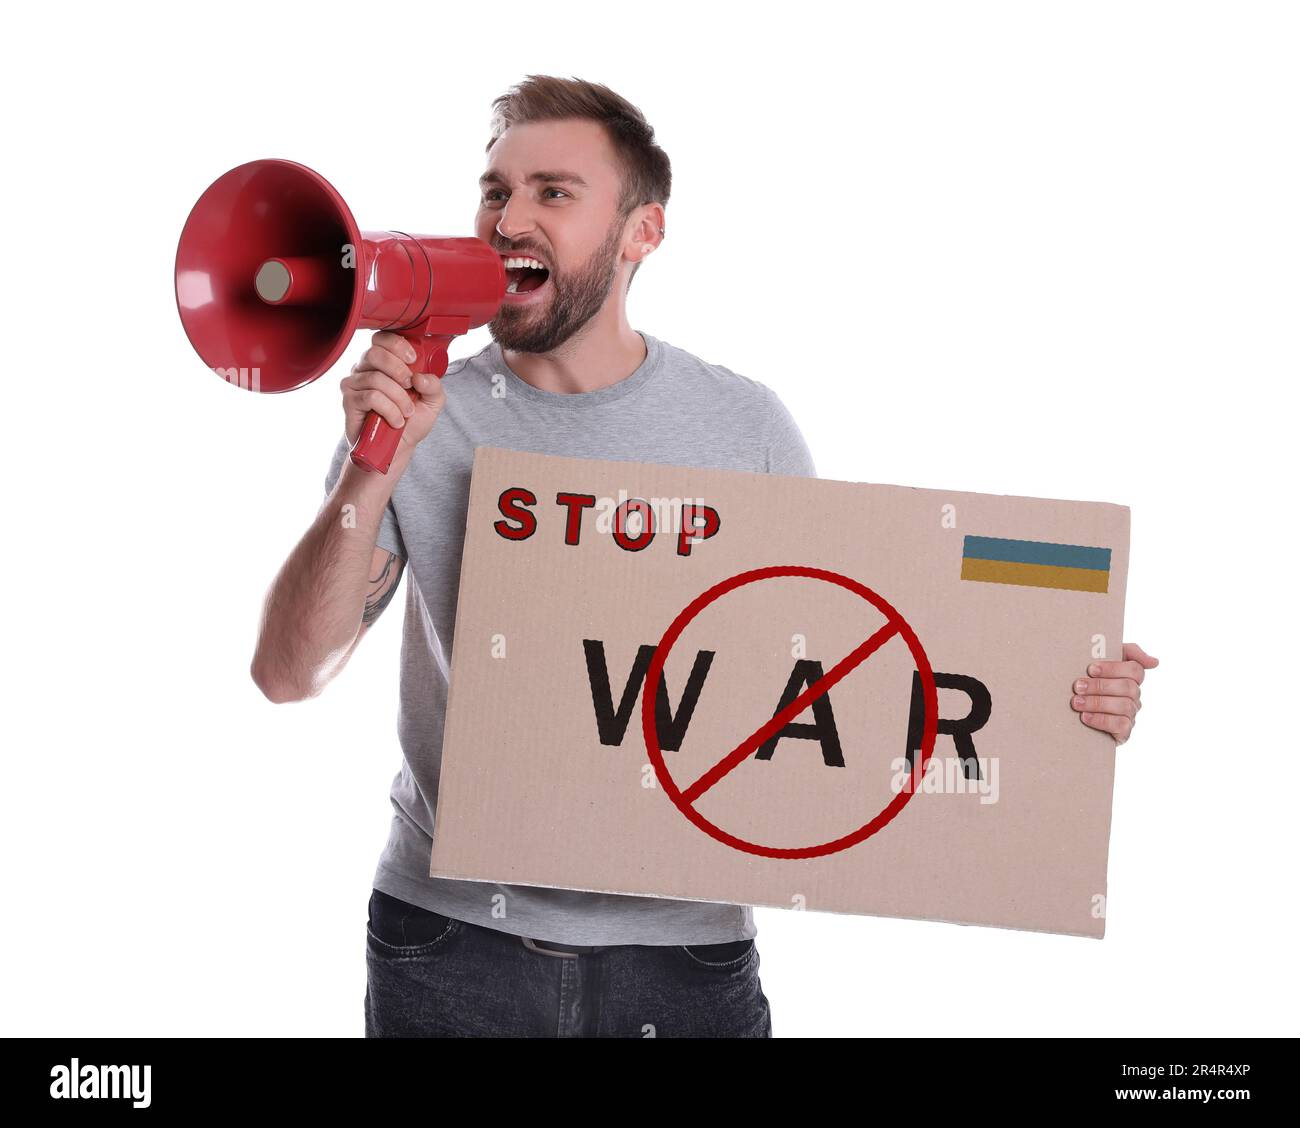 Ein Mann, der Stop war mit Megafon auf weißem Hintergrund anruft. Poster mit Text, ukrainische Flagge und Verbotsschild Stockfoto